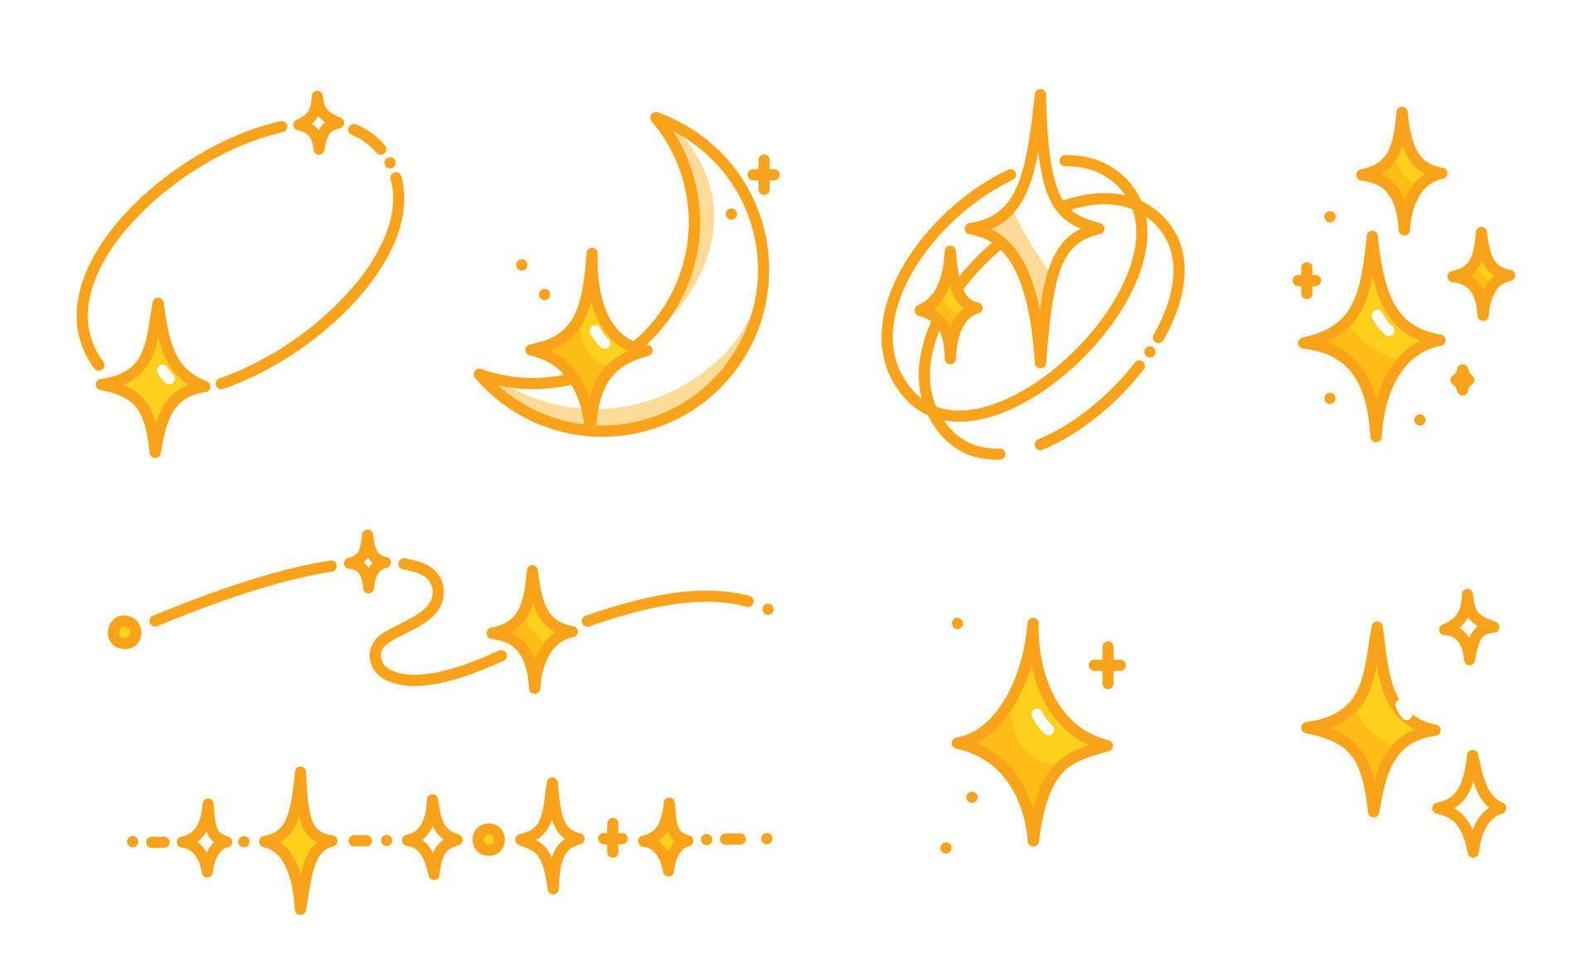 stella d'oro scintillante costellazione kawaii doodle piatto illustrazione vettoriale